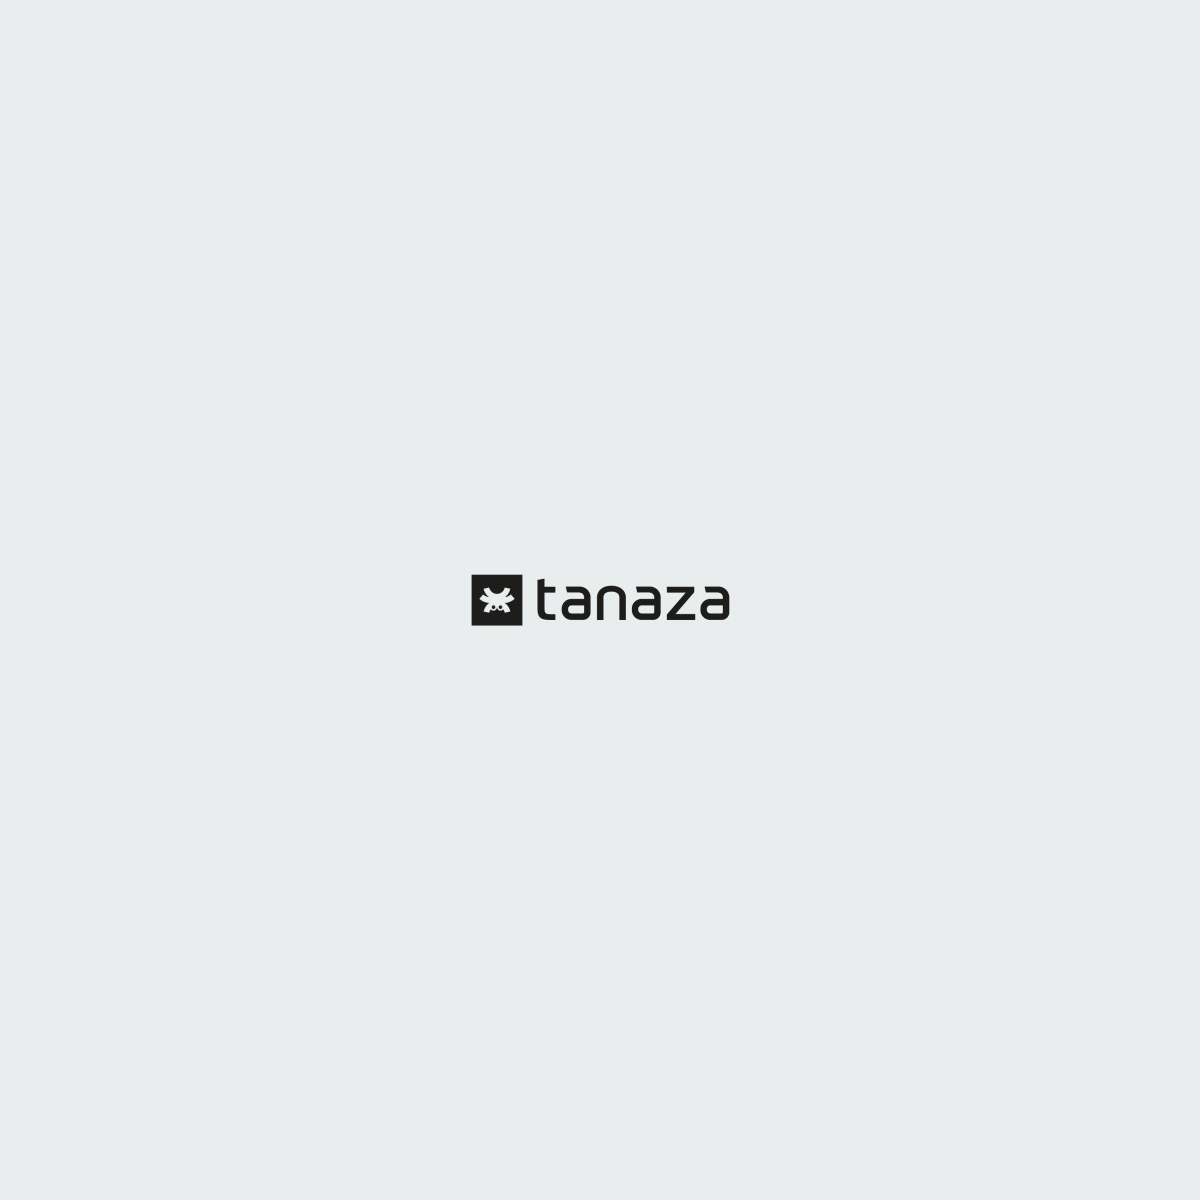 New Tanaza Logo